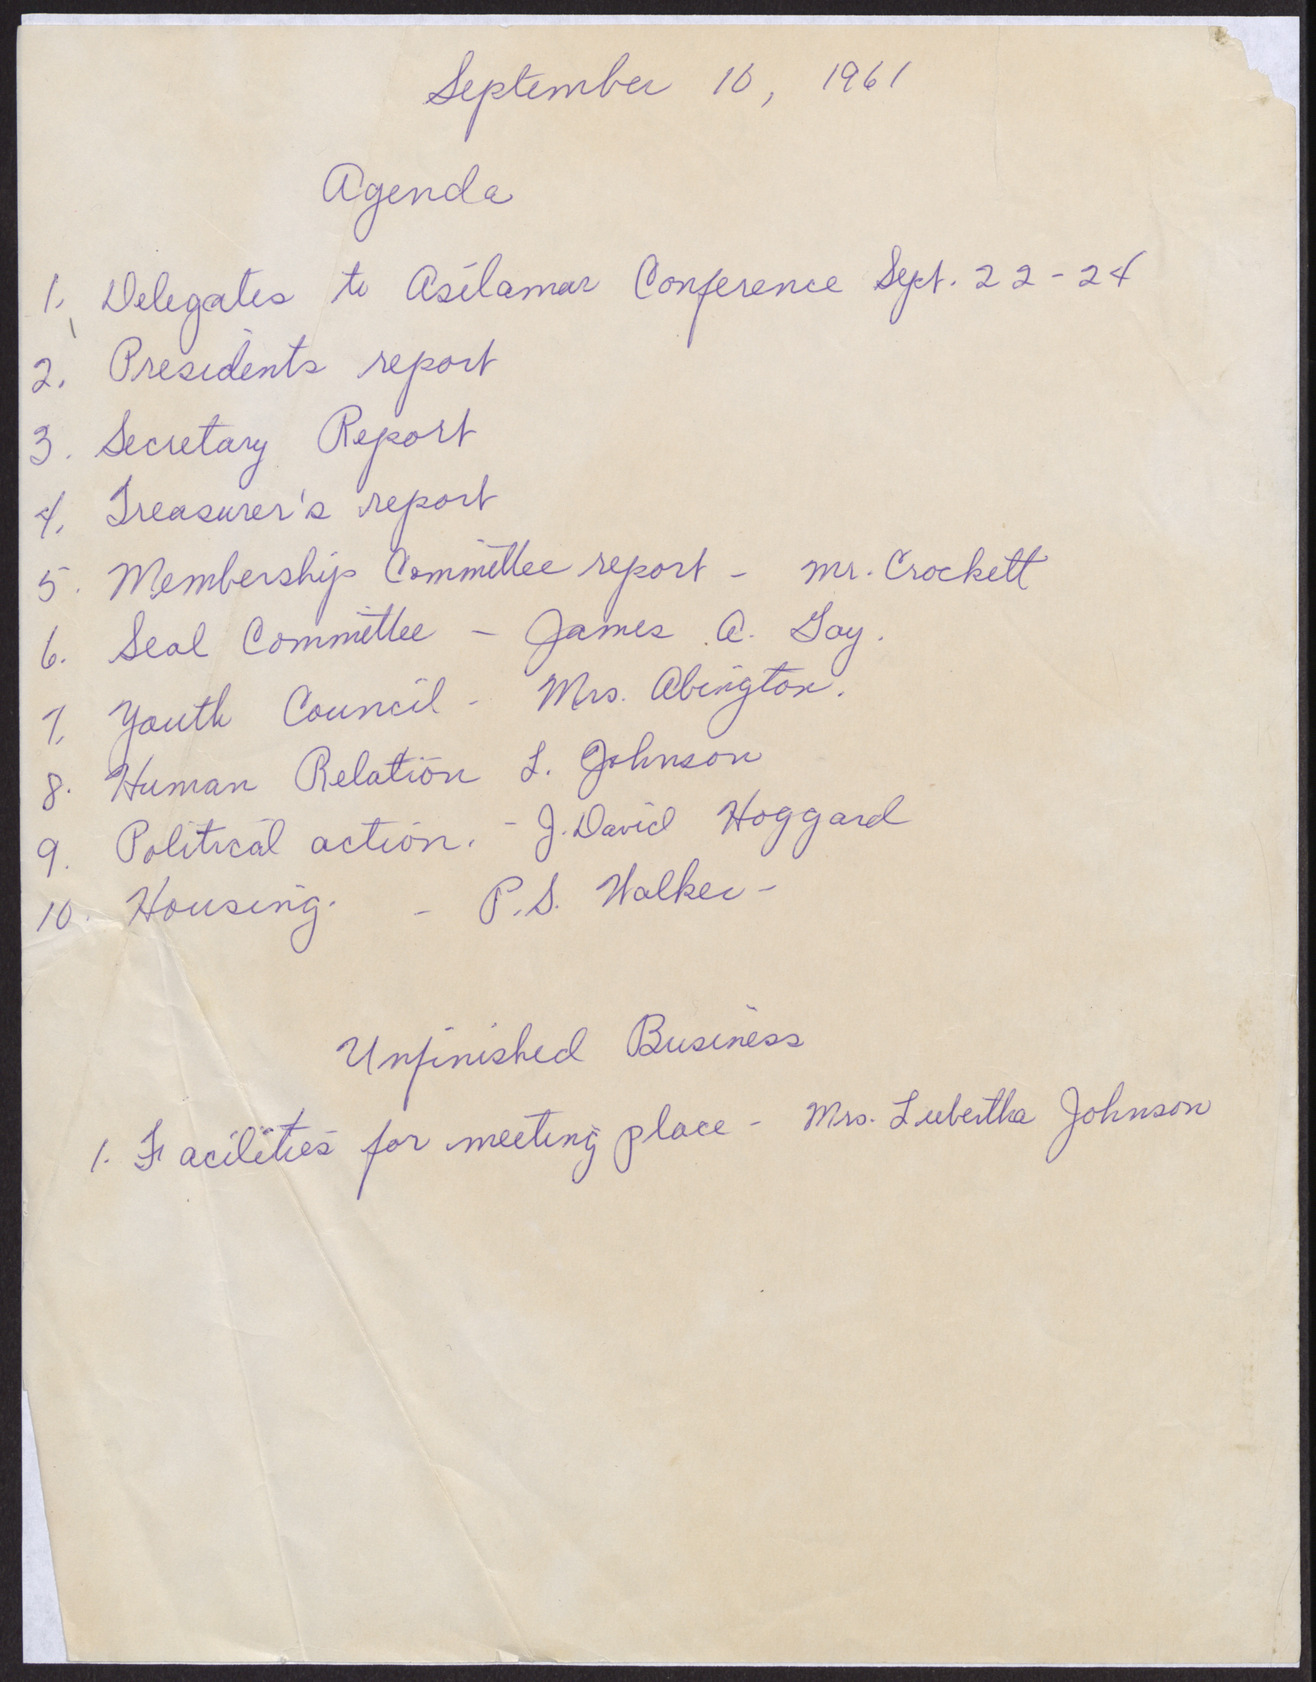 Meeting agenda for September 10, 1961